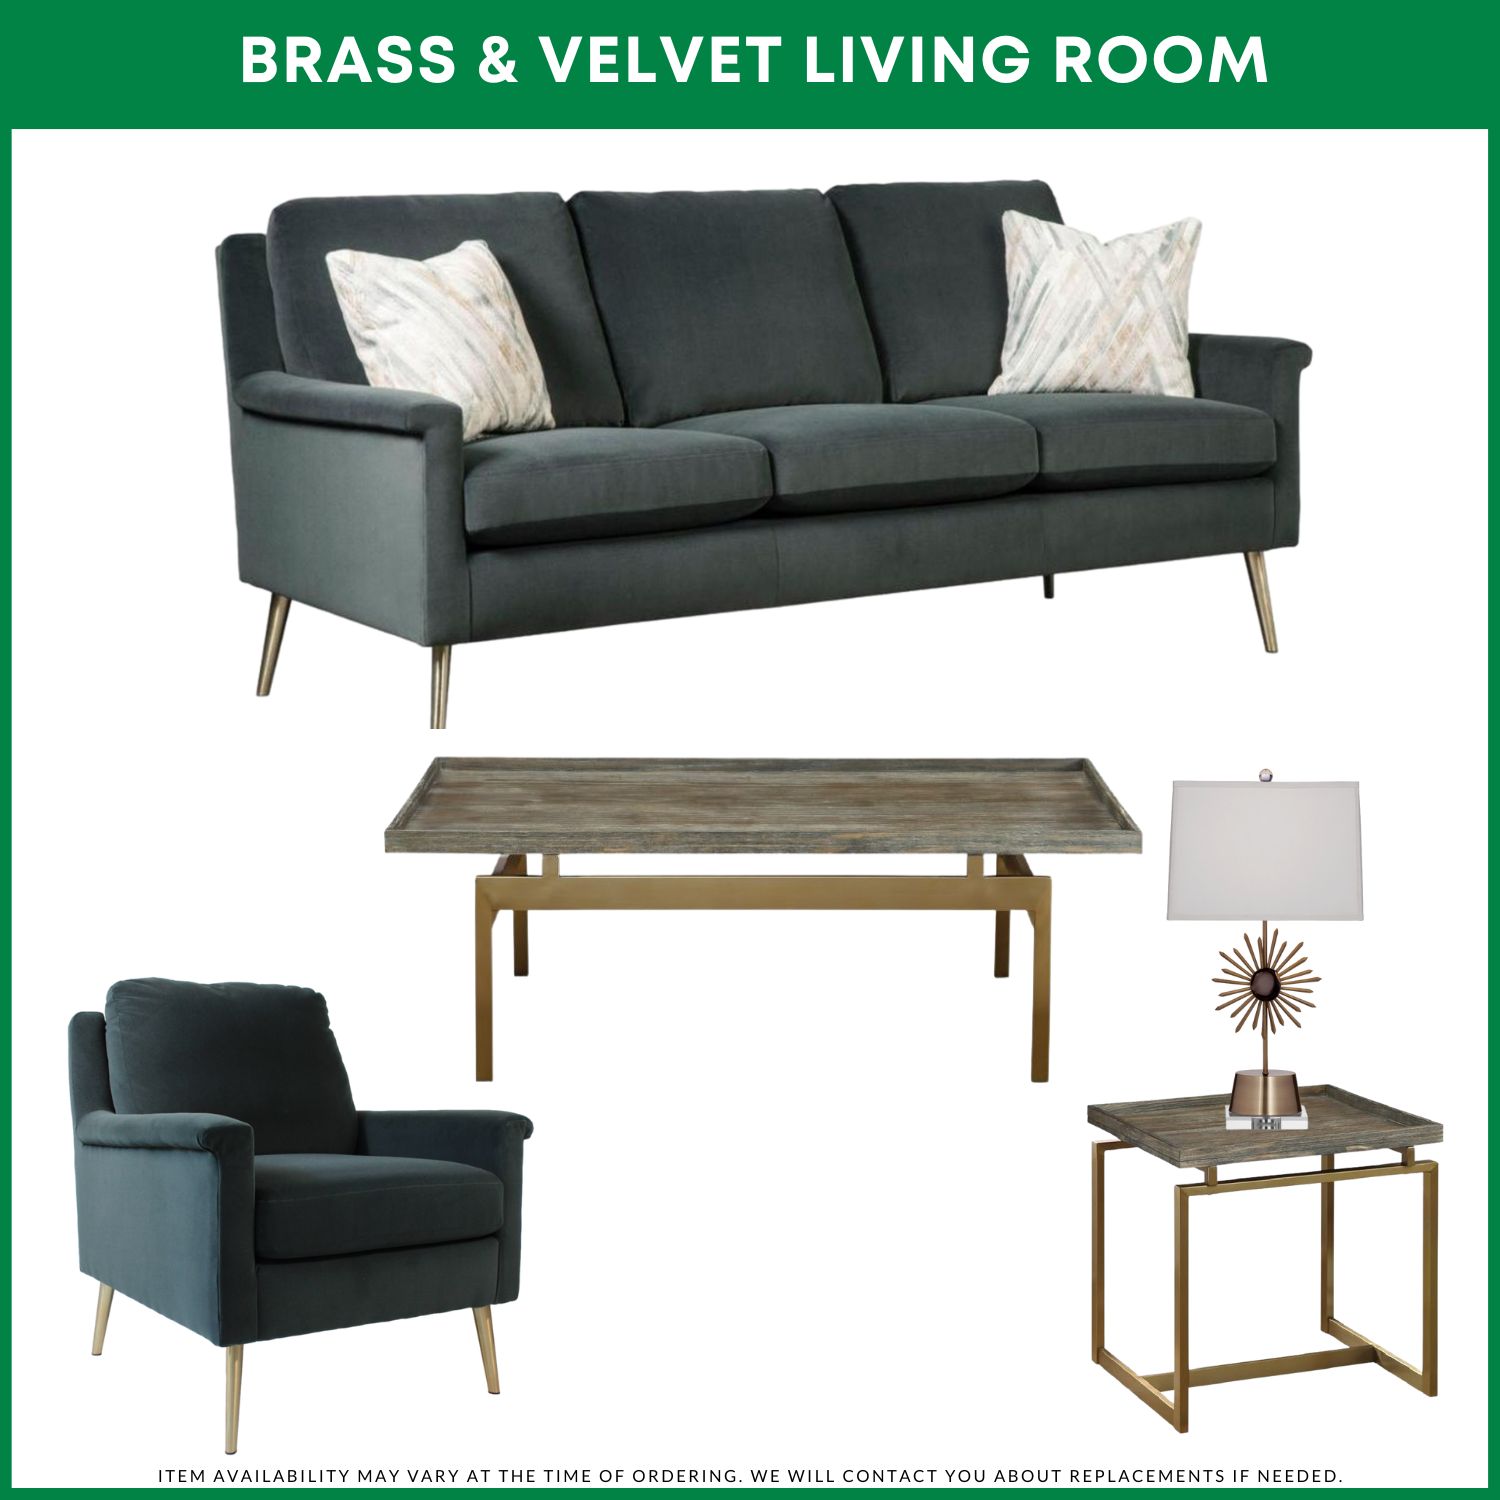 Brass & Velvet Living Room